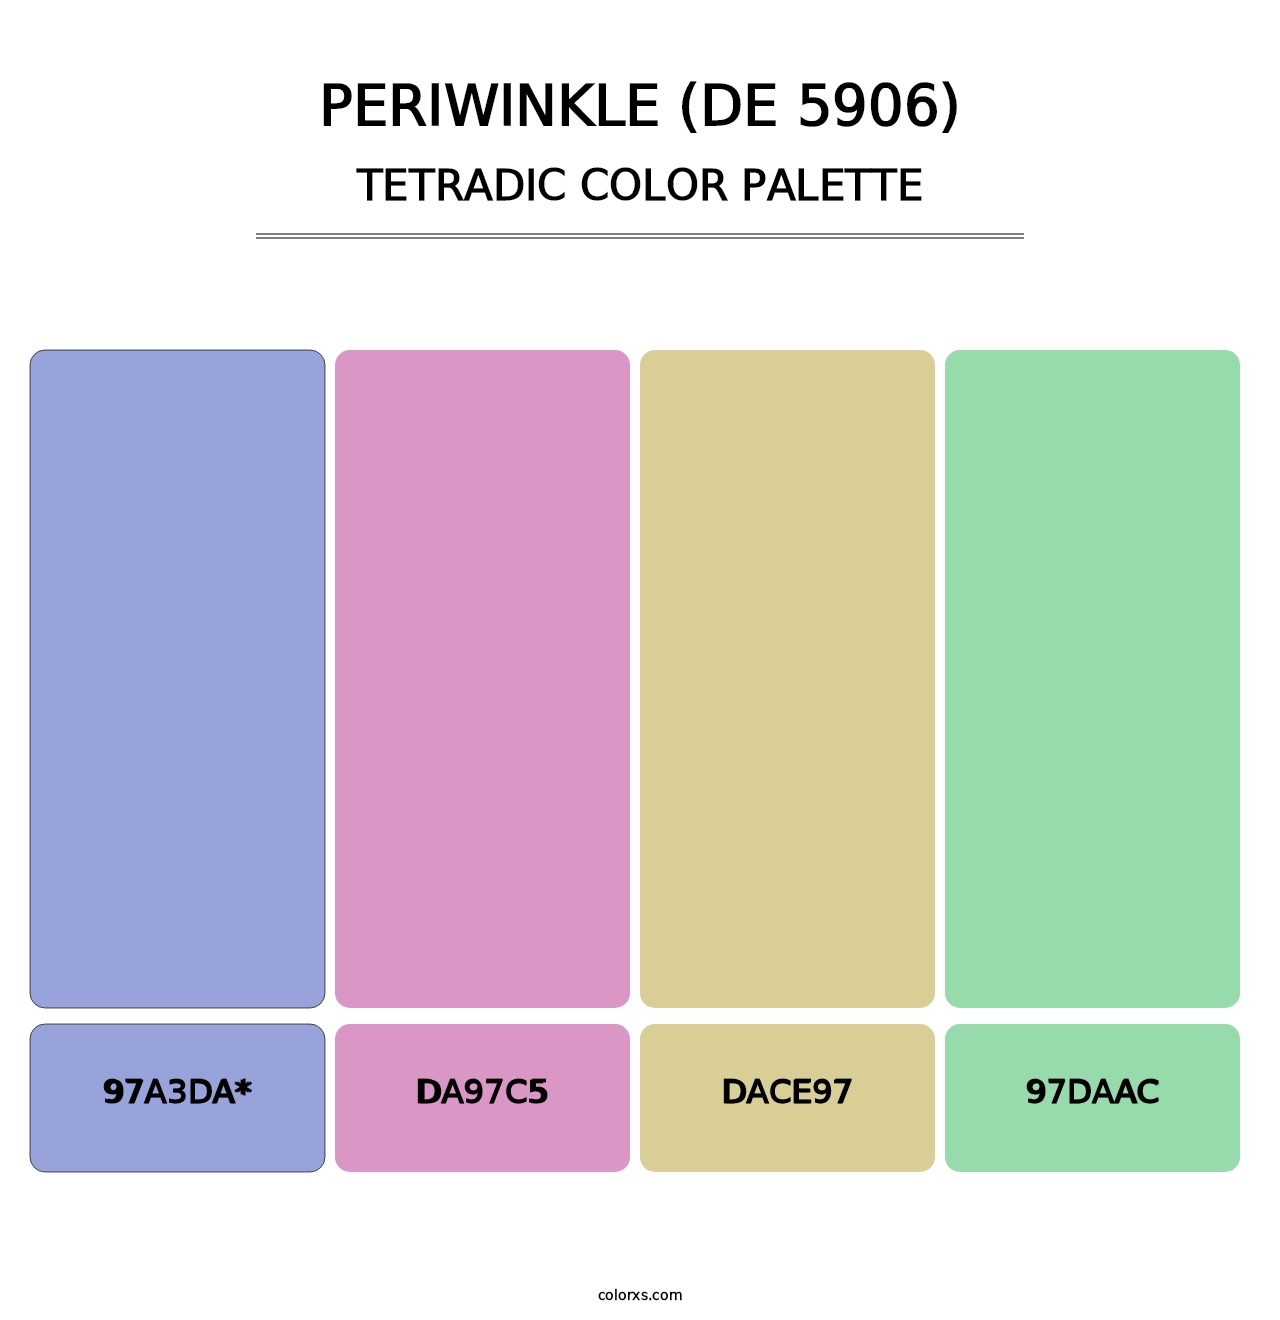 Periwinkle (DE 5906) - Tetradic Color Palette